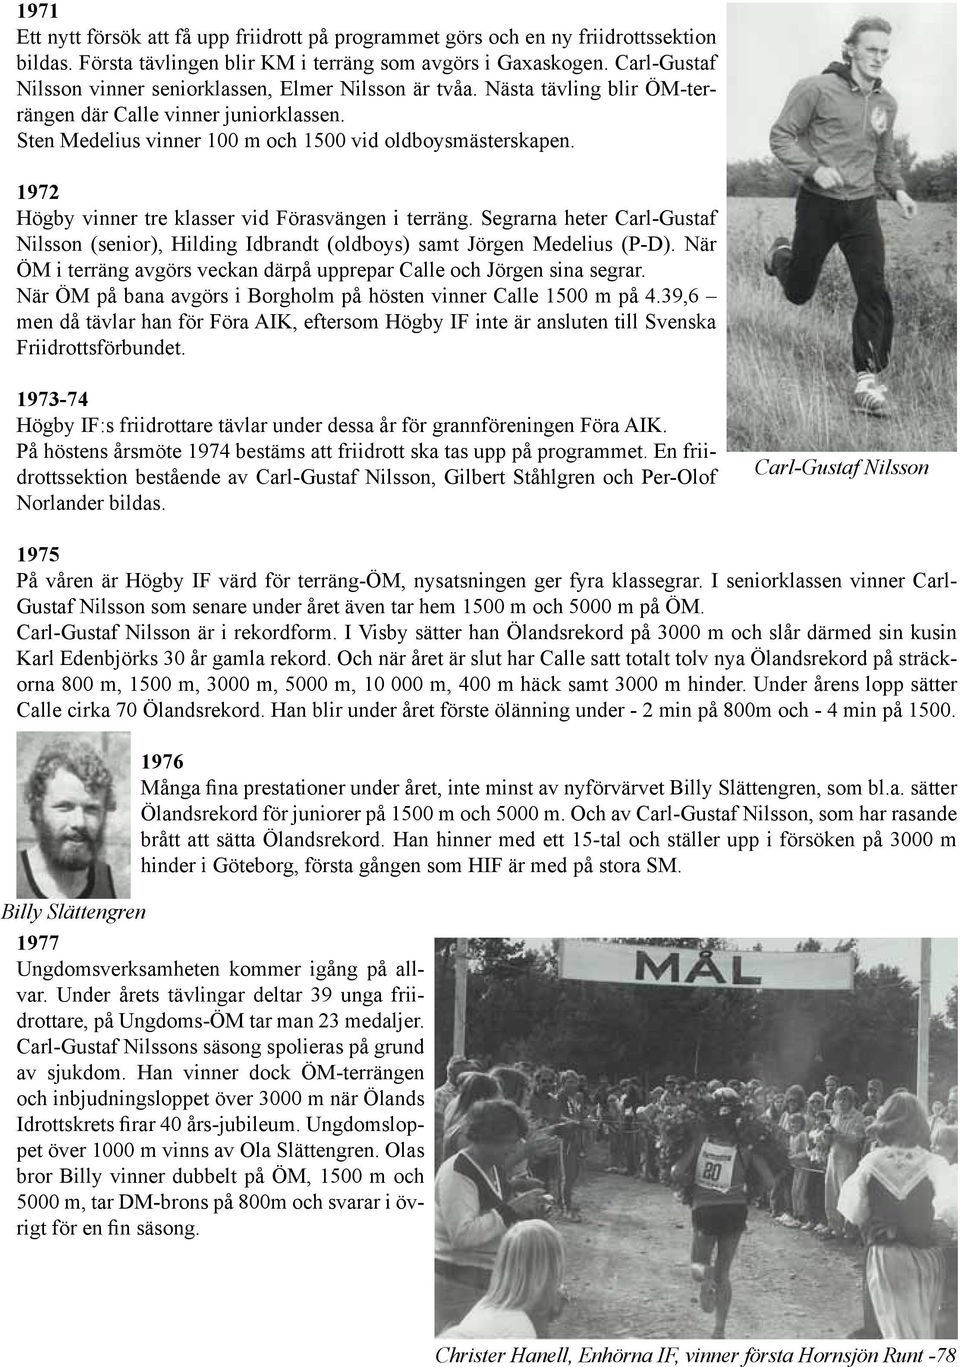 1972 Högby vinner tre klasser vid Förasvängen i terräng. Segrarna heter Carl-Gustaf Nilsson (senior), Hilding Idbrandt (oldboys) samt Jörgen Medelius (P-D).